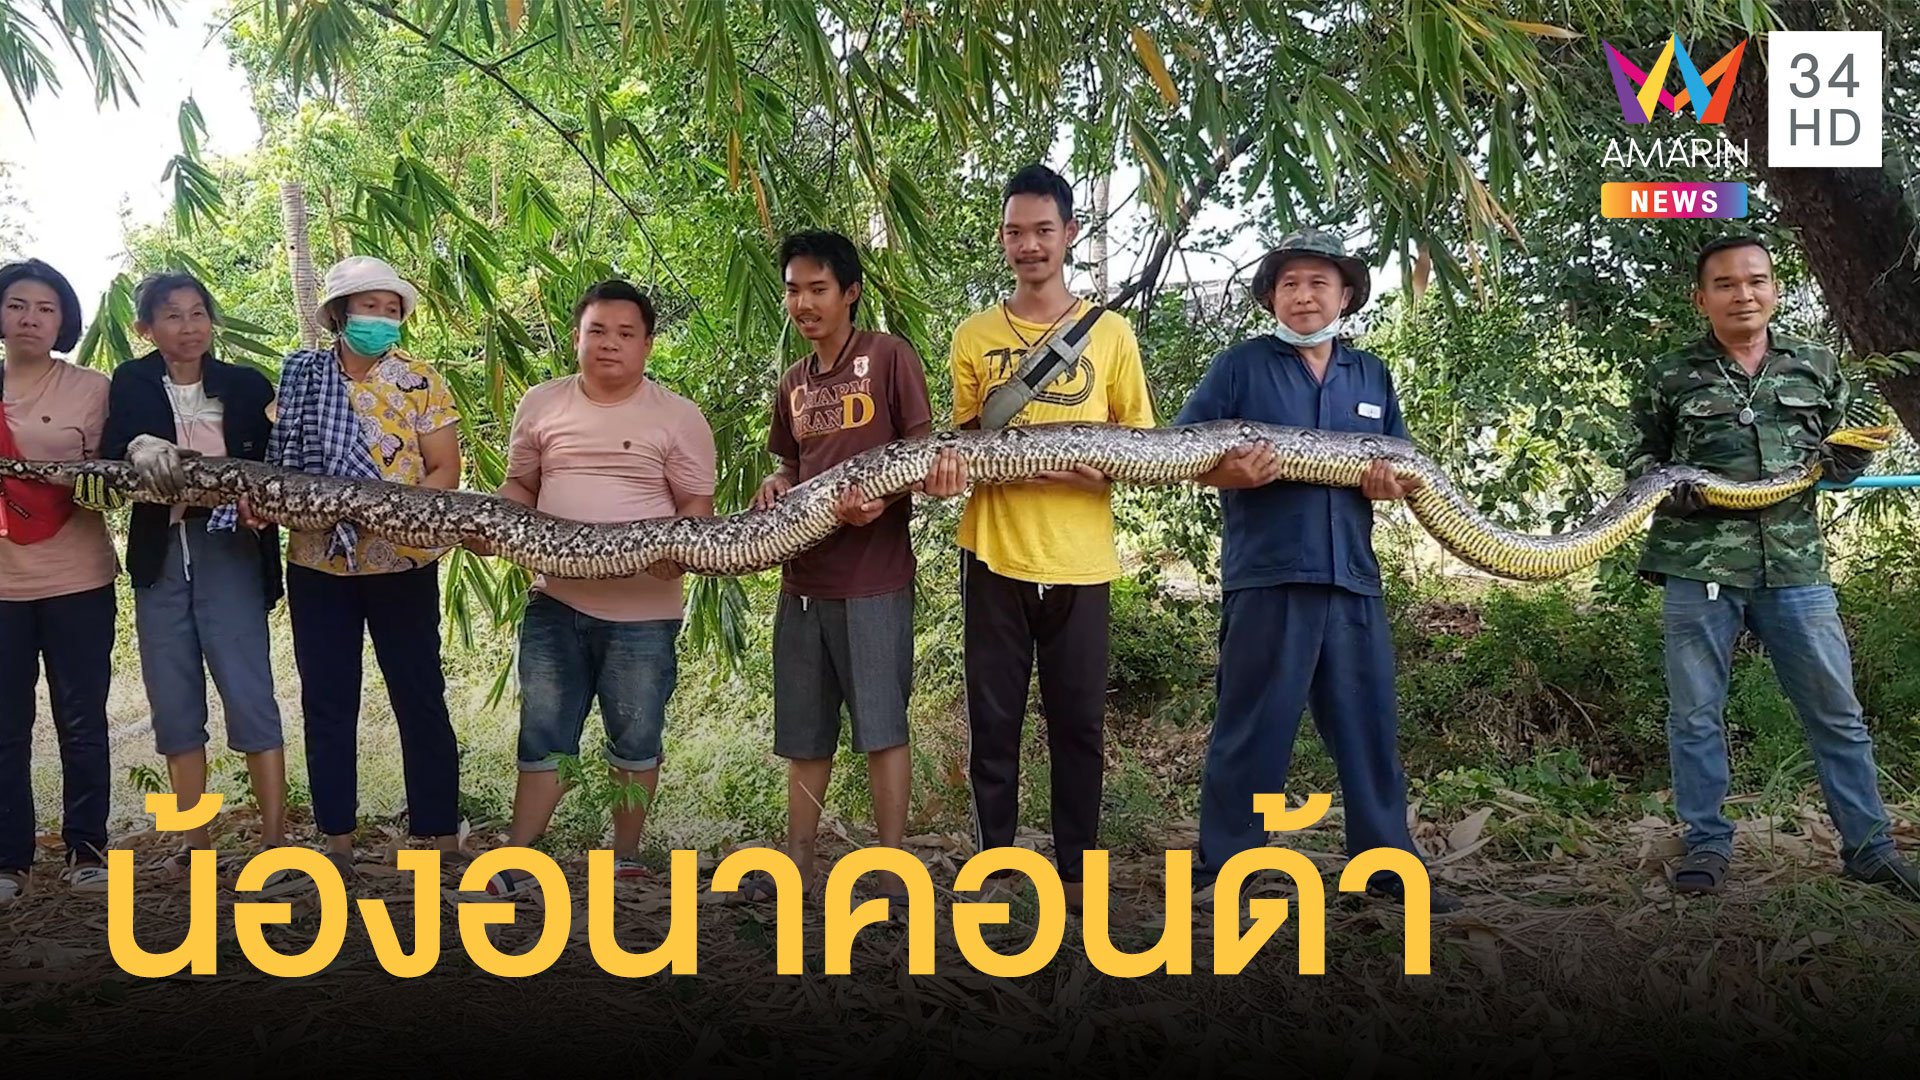 งูเหลือมยักษ์โผล่ใกล้บ้าน น้ำหนัก 100 กิโล ต้องใช้ 8 คนถือ | ข่าวอรุณอมรินทร์ | 2 มี.ค. 64 | AMARIN TVHD34